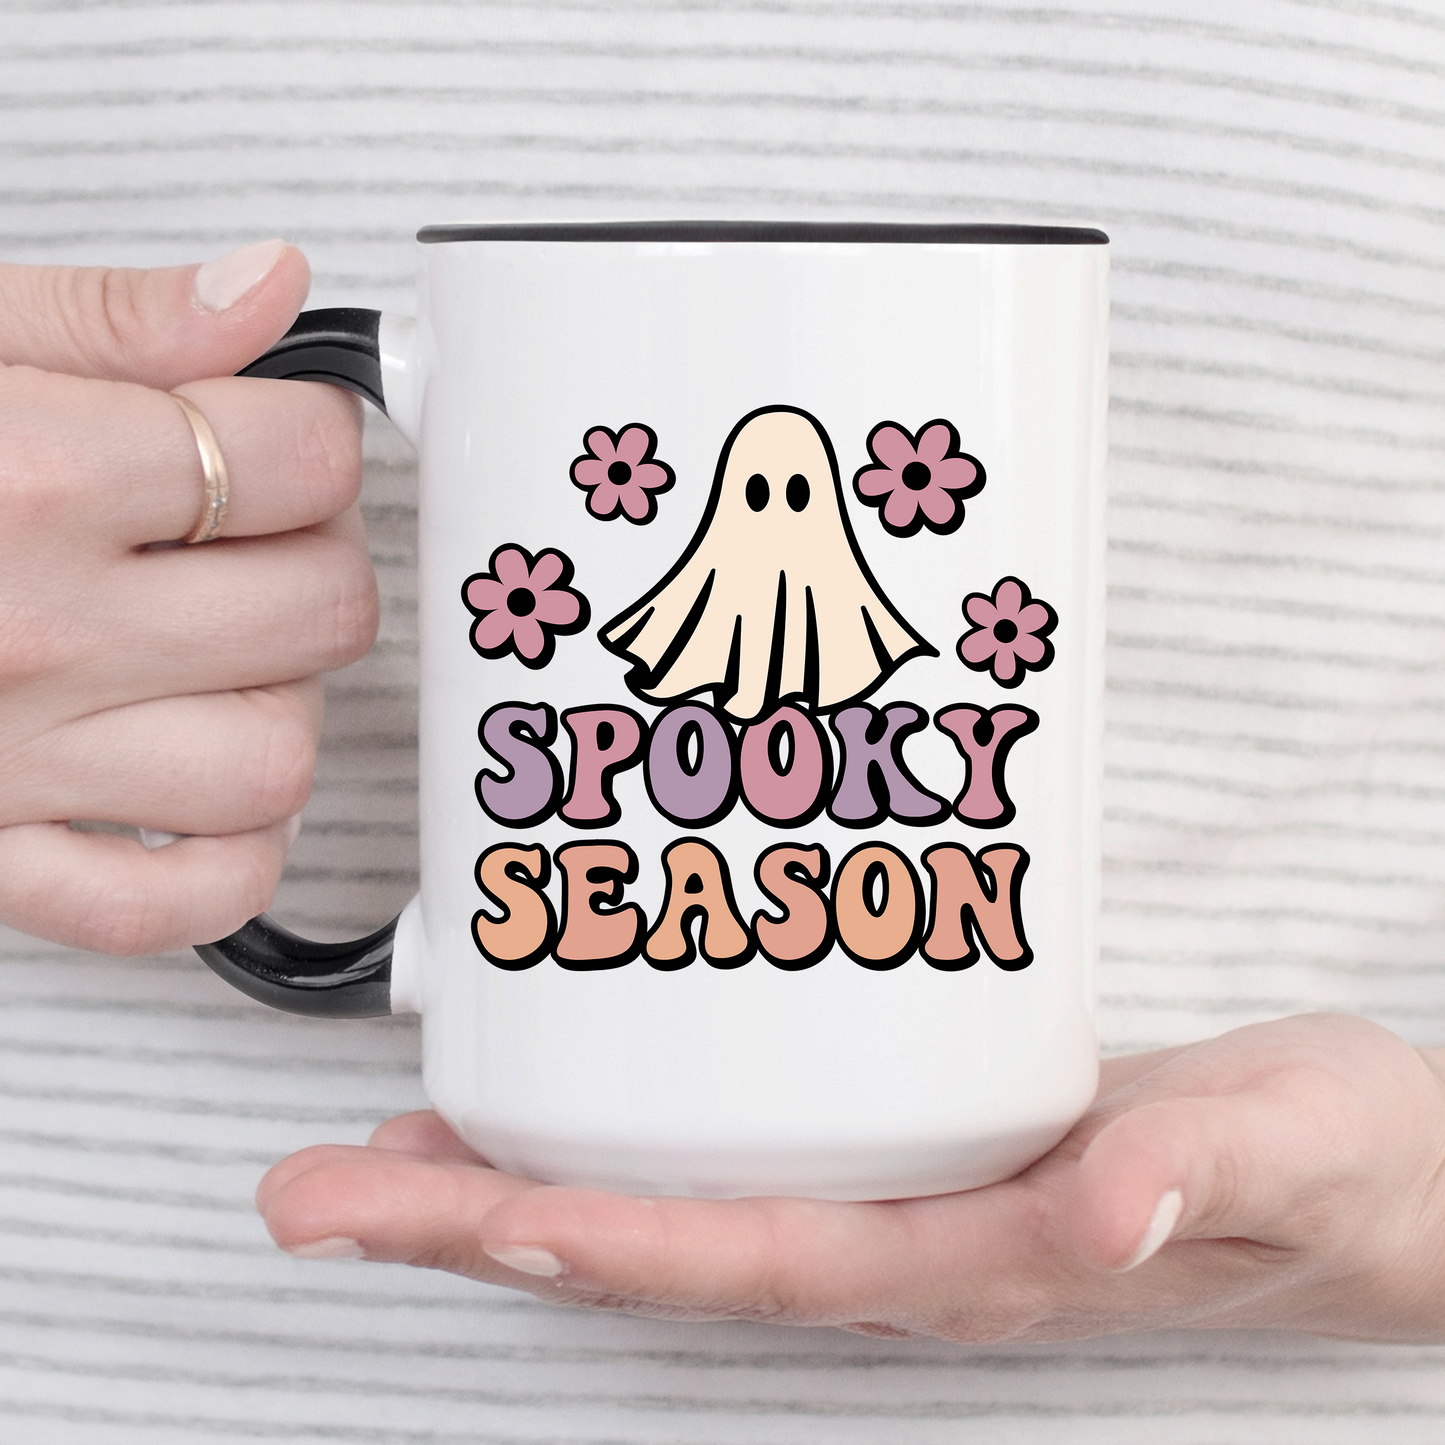 Spooky Season Ghost Mug